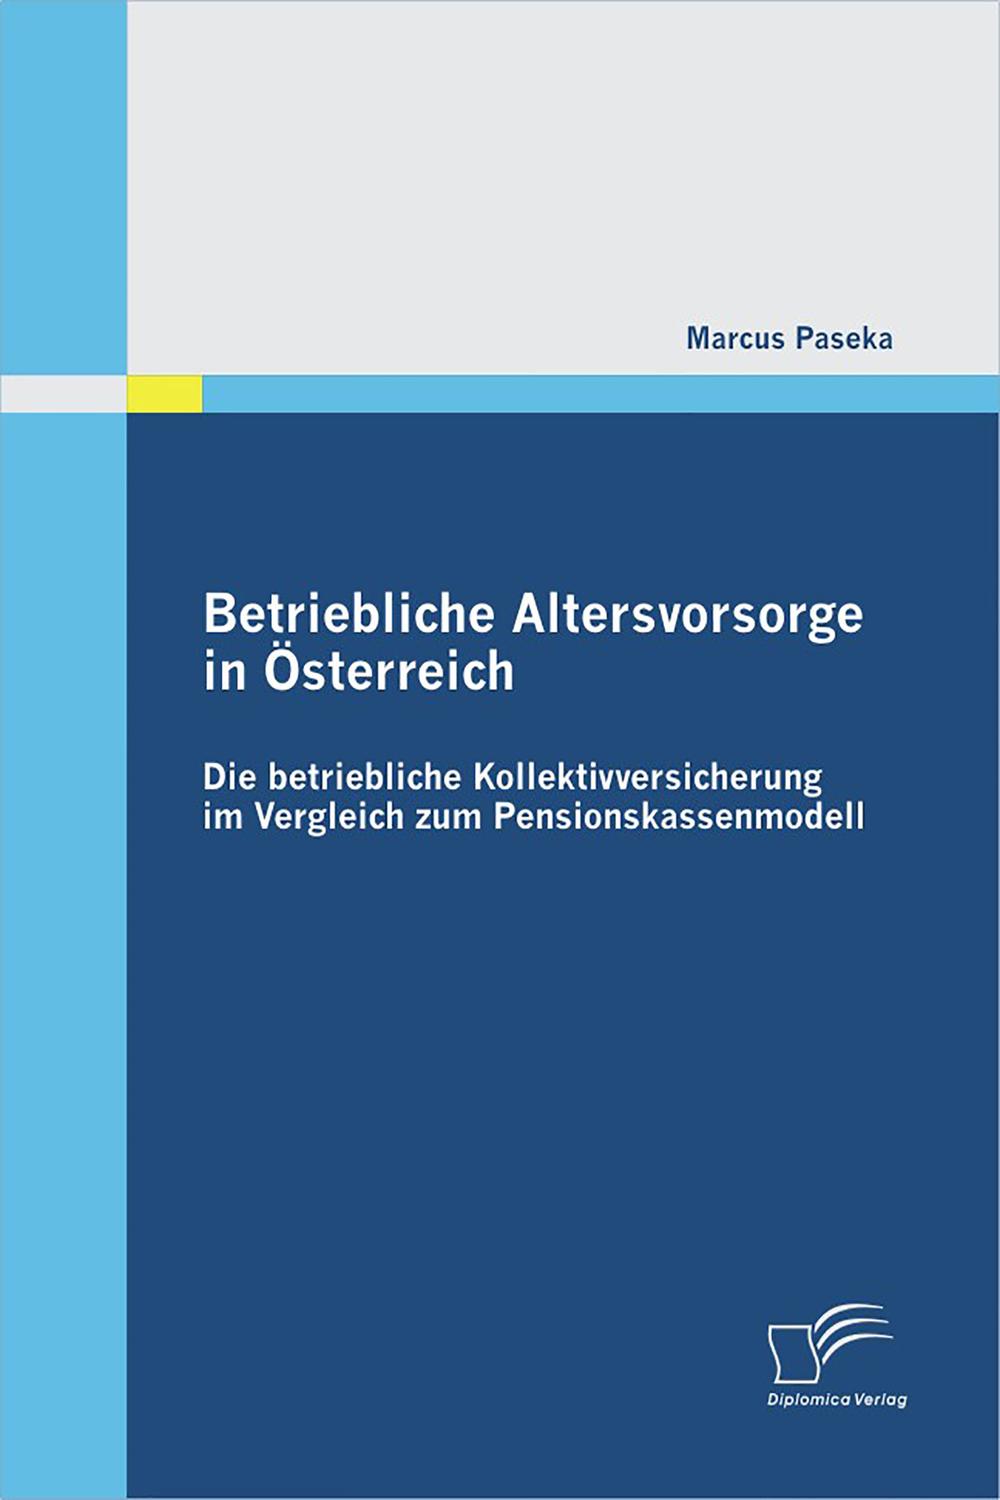 Betriebliche Altersvorsorge in Österreich: Die betriebliche Kollektivversicherung im Vergleich zum Pensionskassenmodell - Marcus Paseka